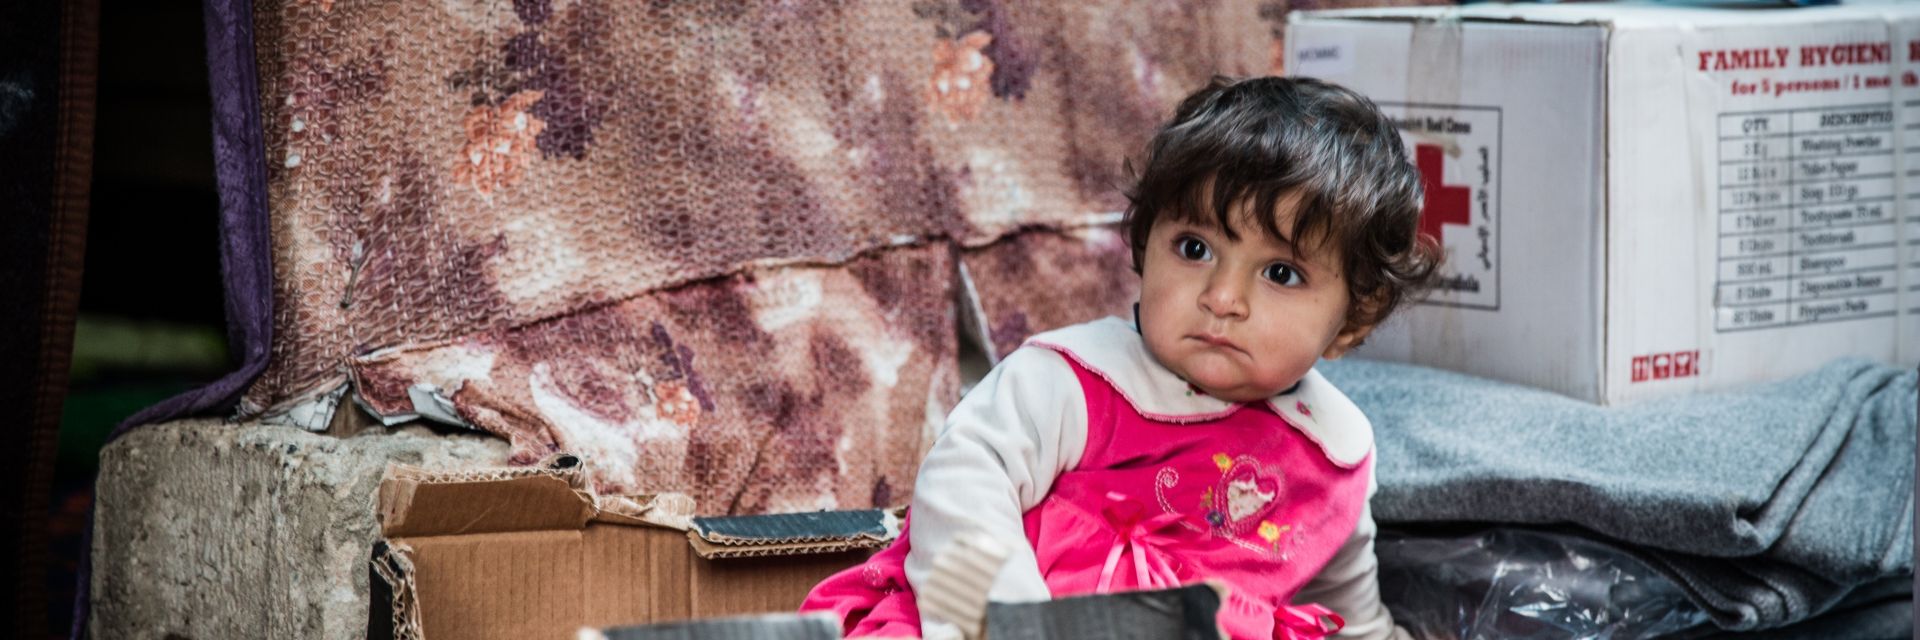 Ein kleines irakisches Mädchen im Karton